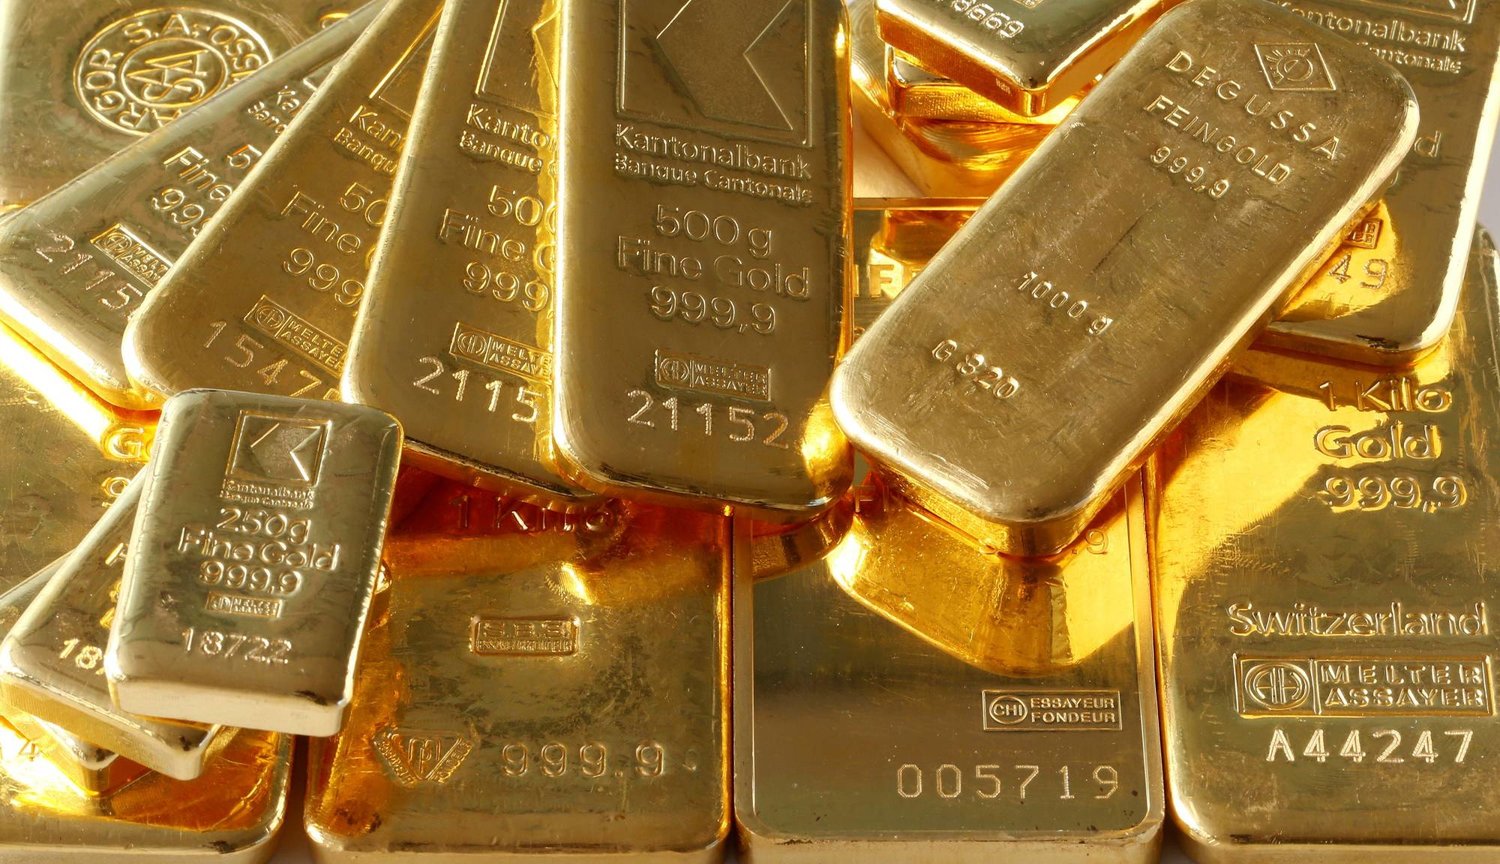 سبائك الذهب من قبو أحد البنوك تظهر في هذه الصورة التوضيحية التي التقطت في زيوريخ (رويترز)